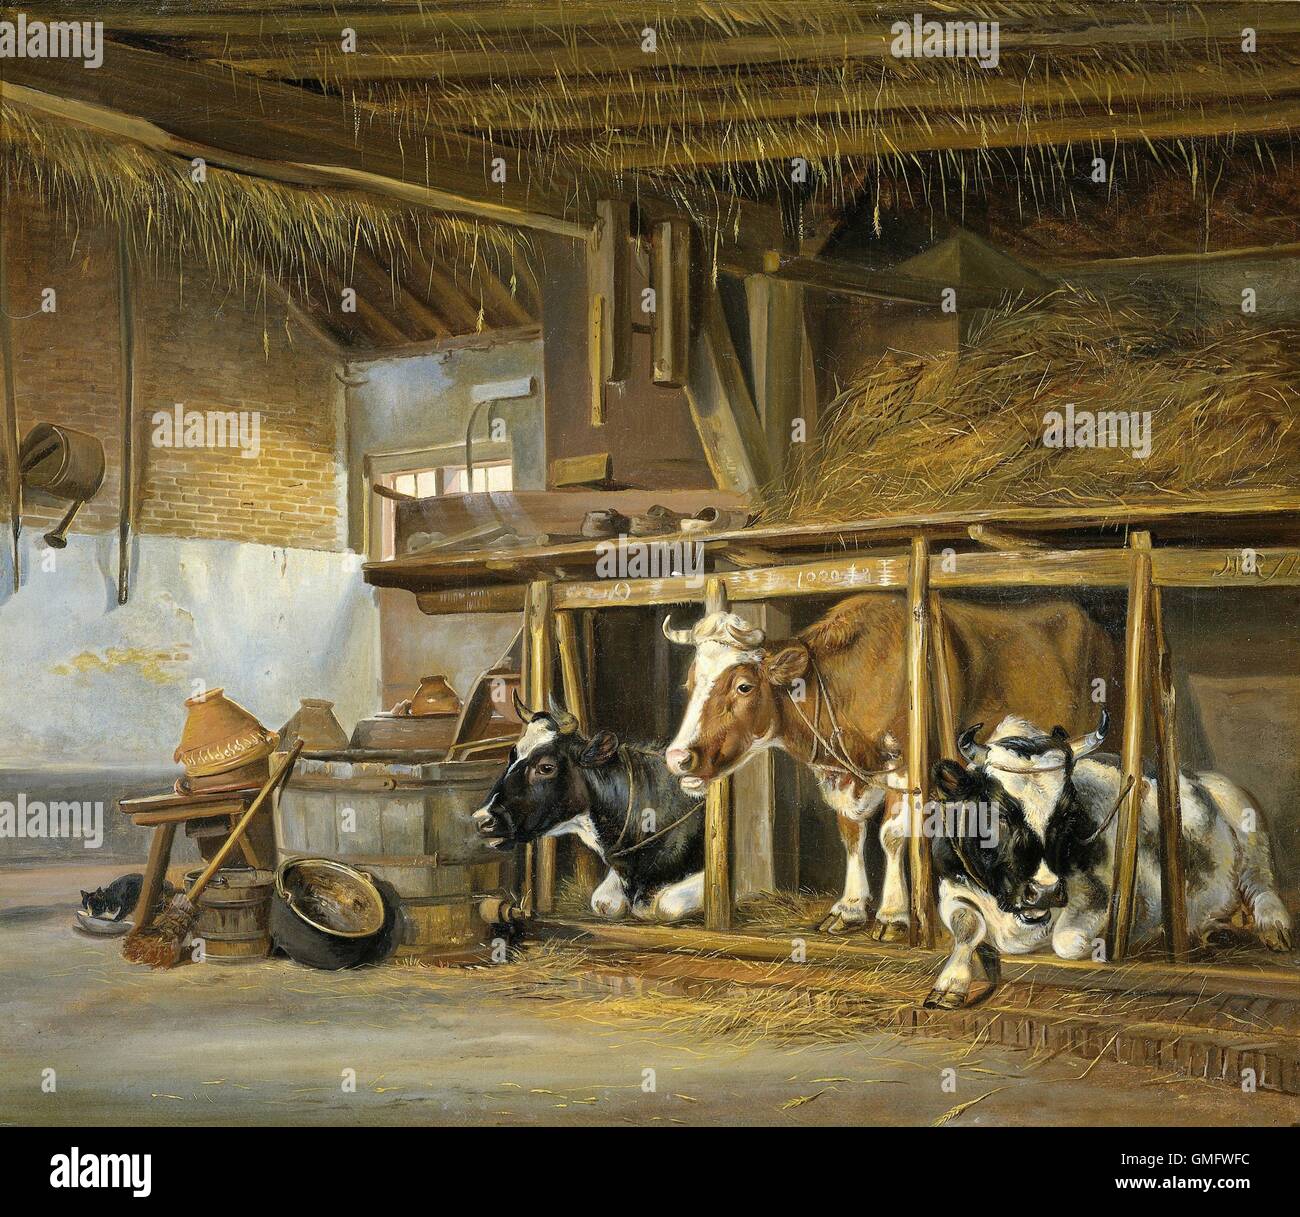 Vaches dans une étable, par Jan van Ravenswaay, 1820, la peinture hollandaise, huile sur toile. Barn intérieur avec trois vaches à l'étable dans un grenier à foin. À droite, un chat boire du lait (BSLOC 2016 1 293) Banque D'Images